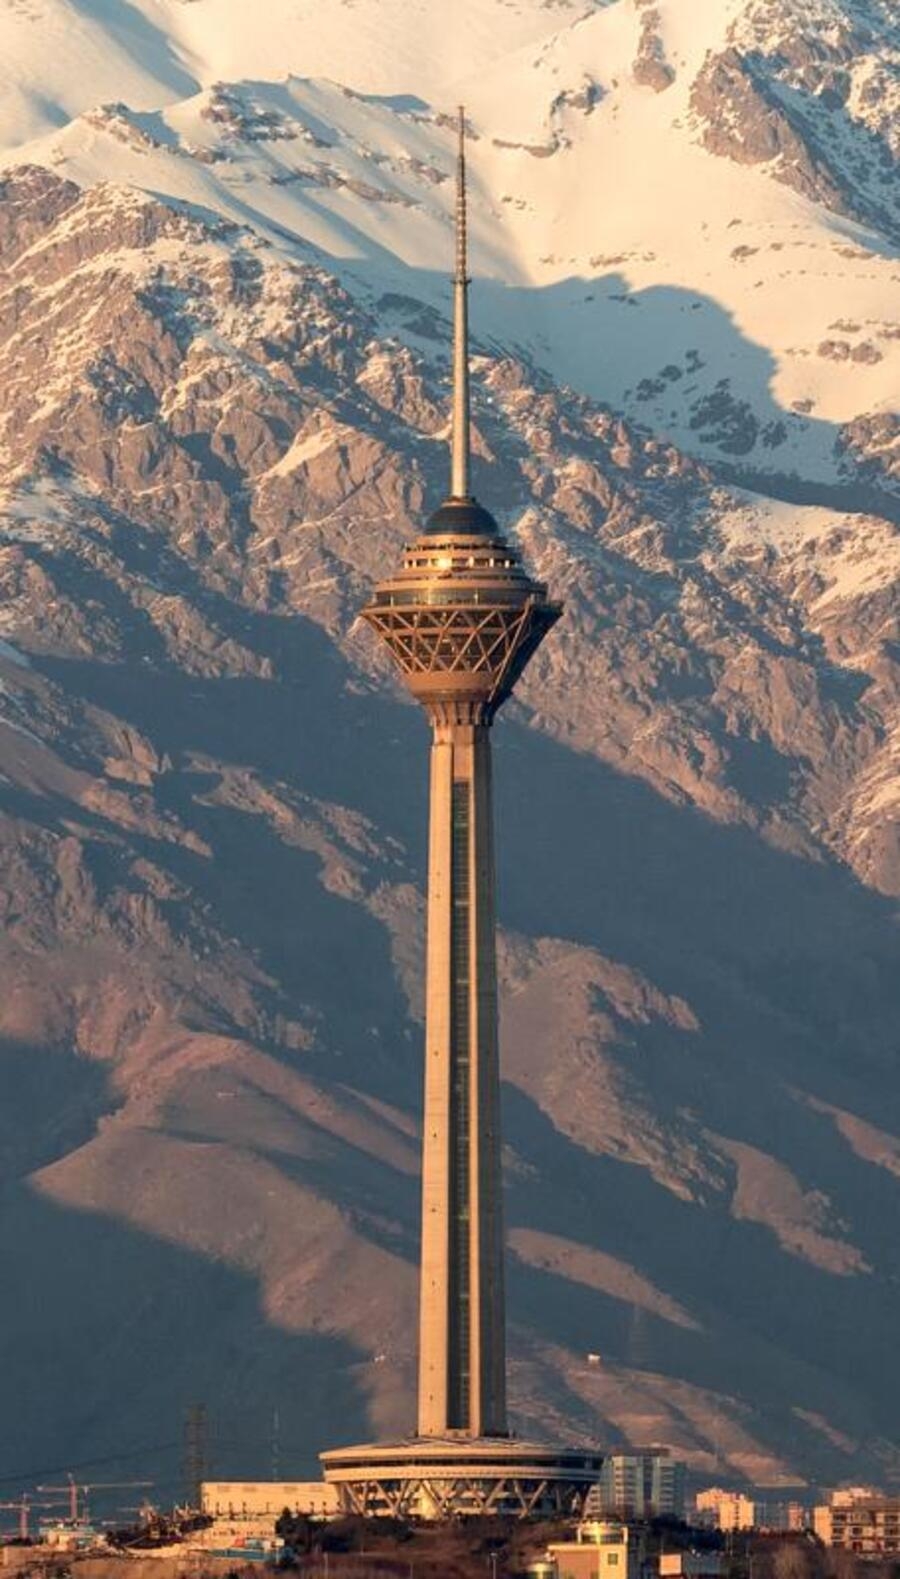 Torre Milad - 435 metros - Irã -  Foi inaugurada em 2007, 11 anos após o início da construção, na capital Teerã. Com design moderno, a torre possui em seu interior diversas instalações, como restaurantes, centros comerciais, escritórios e um hotel de luxo. Reprodução: Flipar